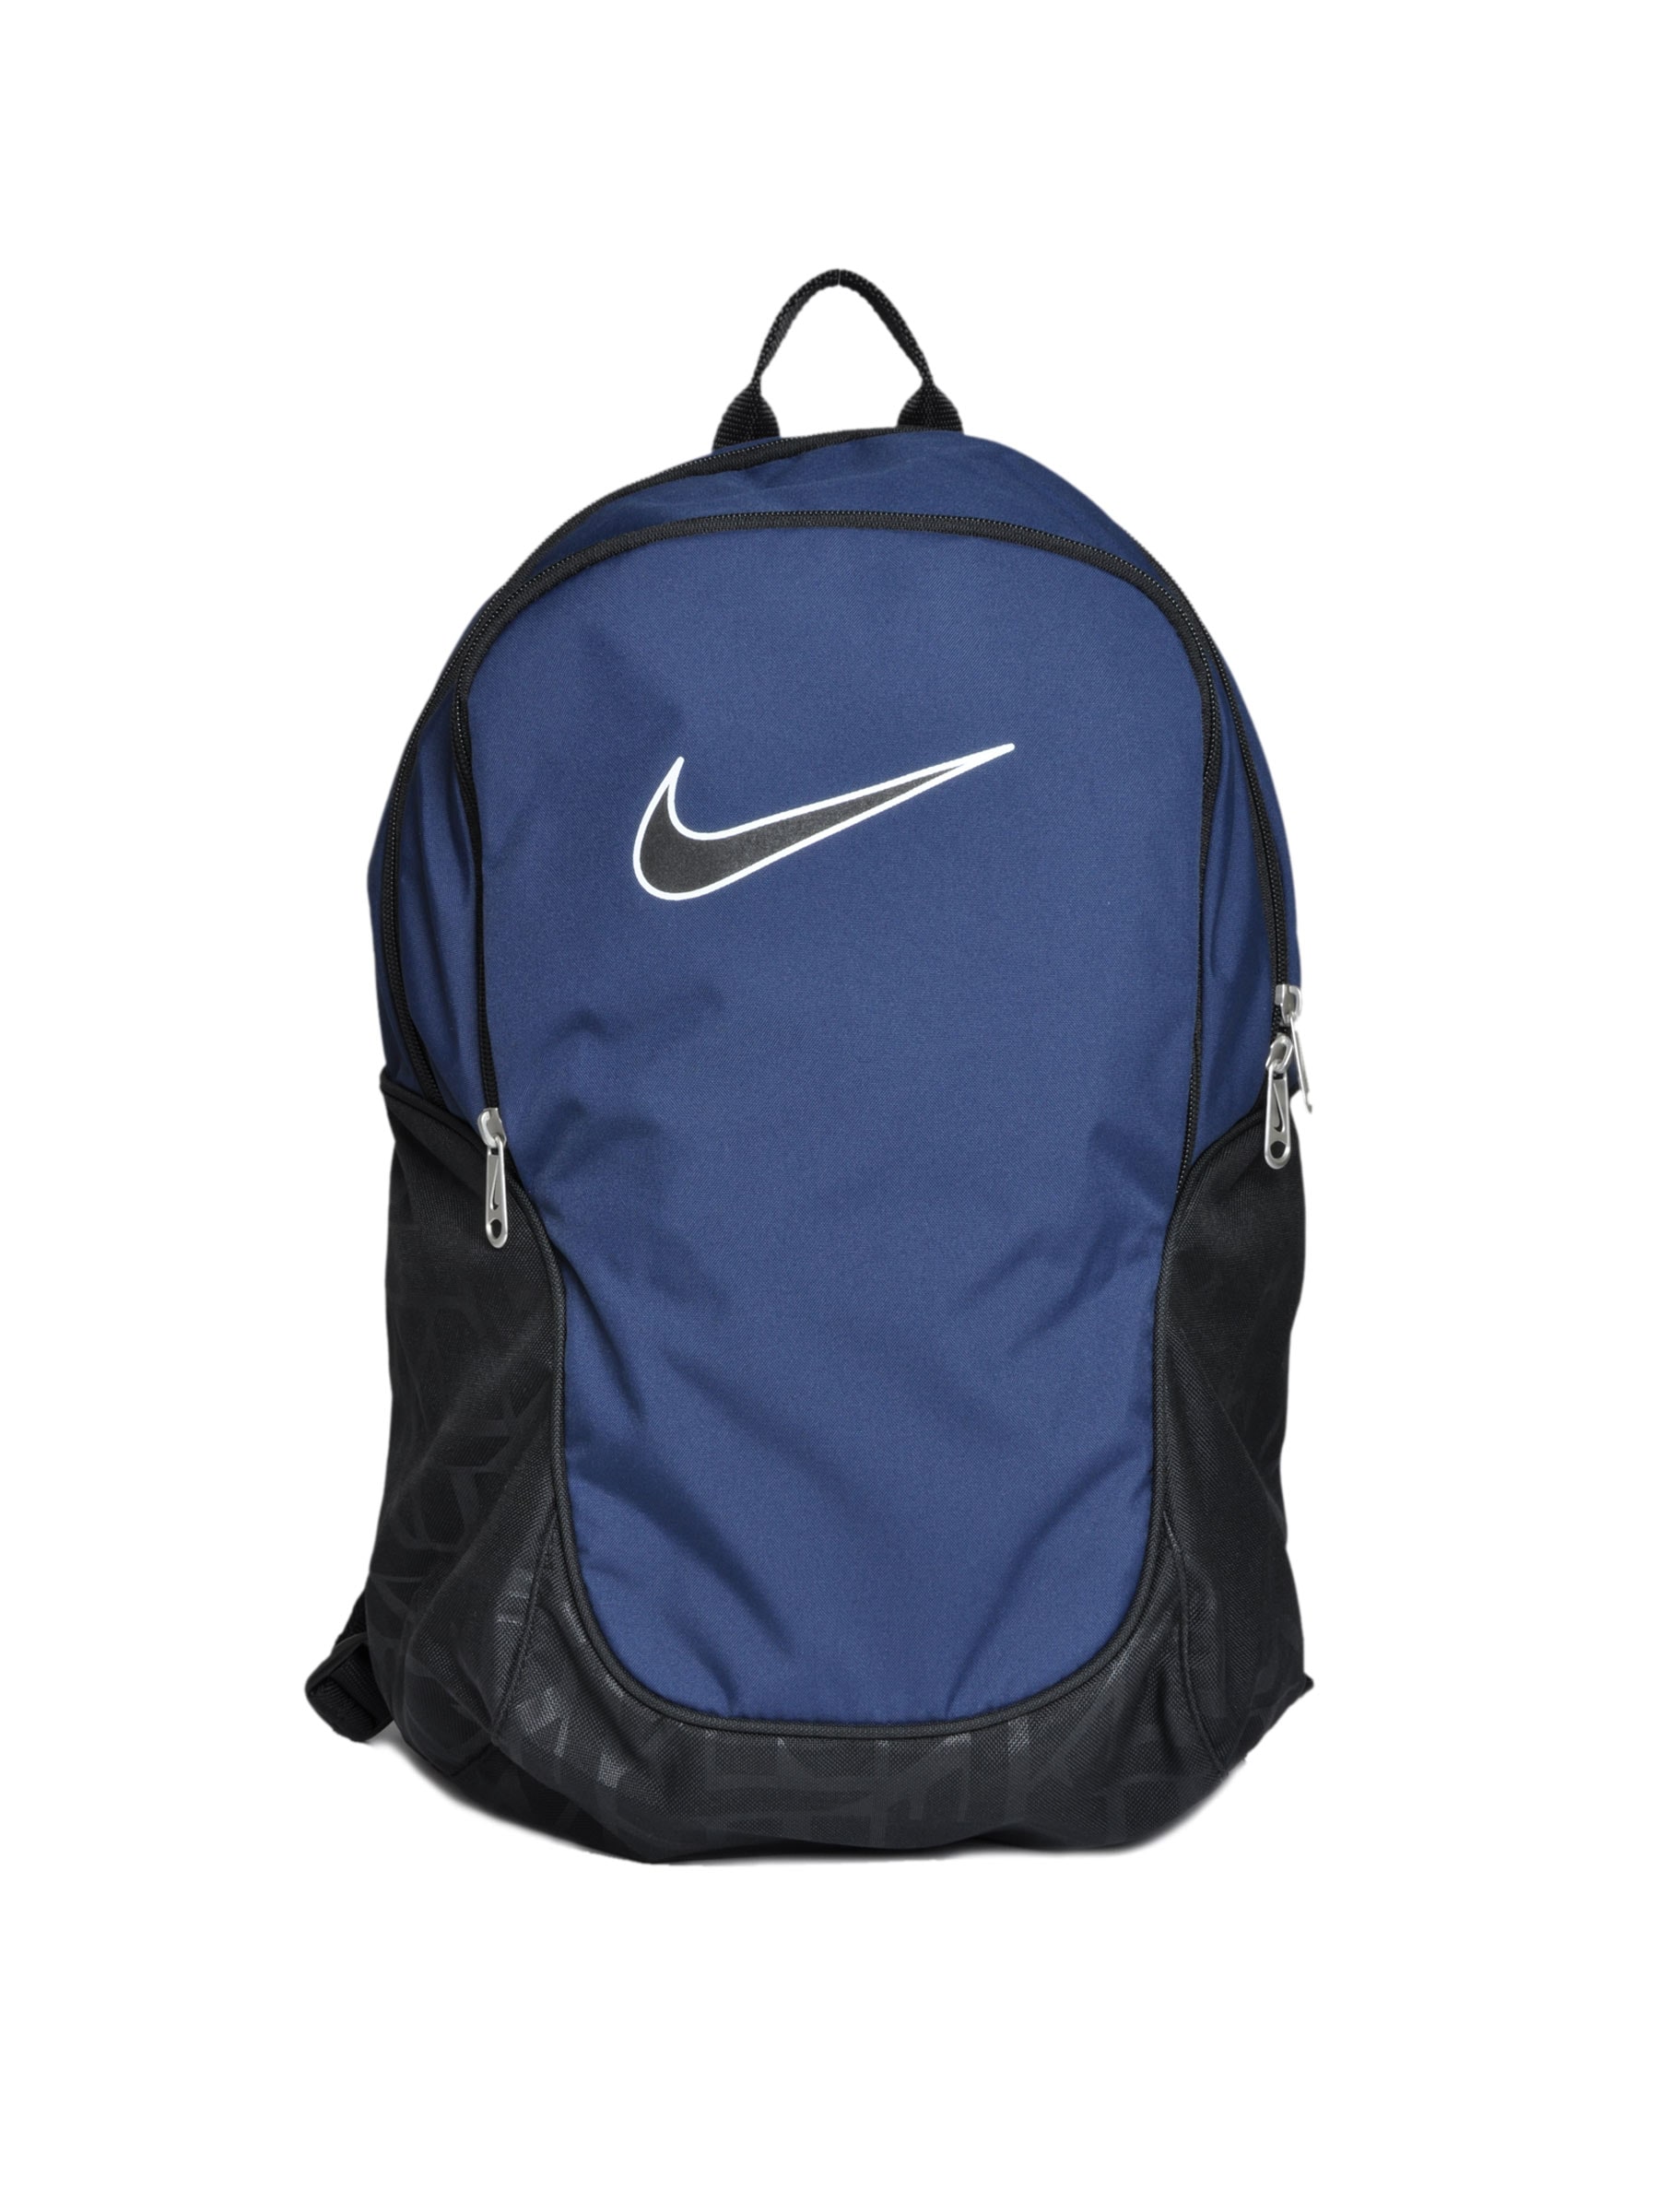 Nike Unisex Brasilia 5 Me Blue Backpacks